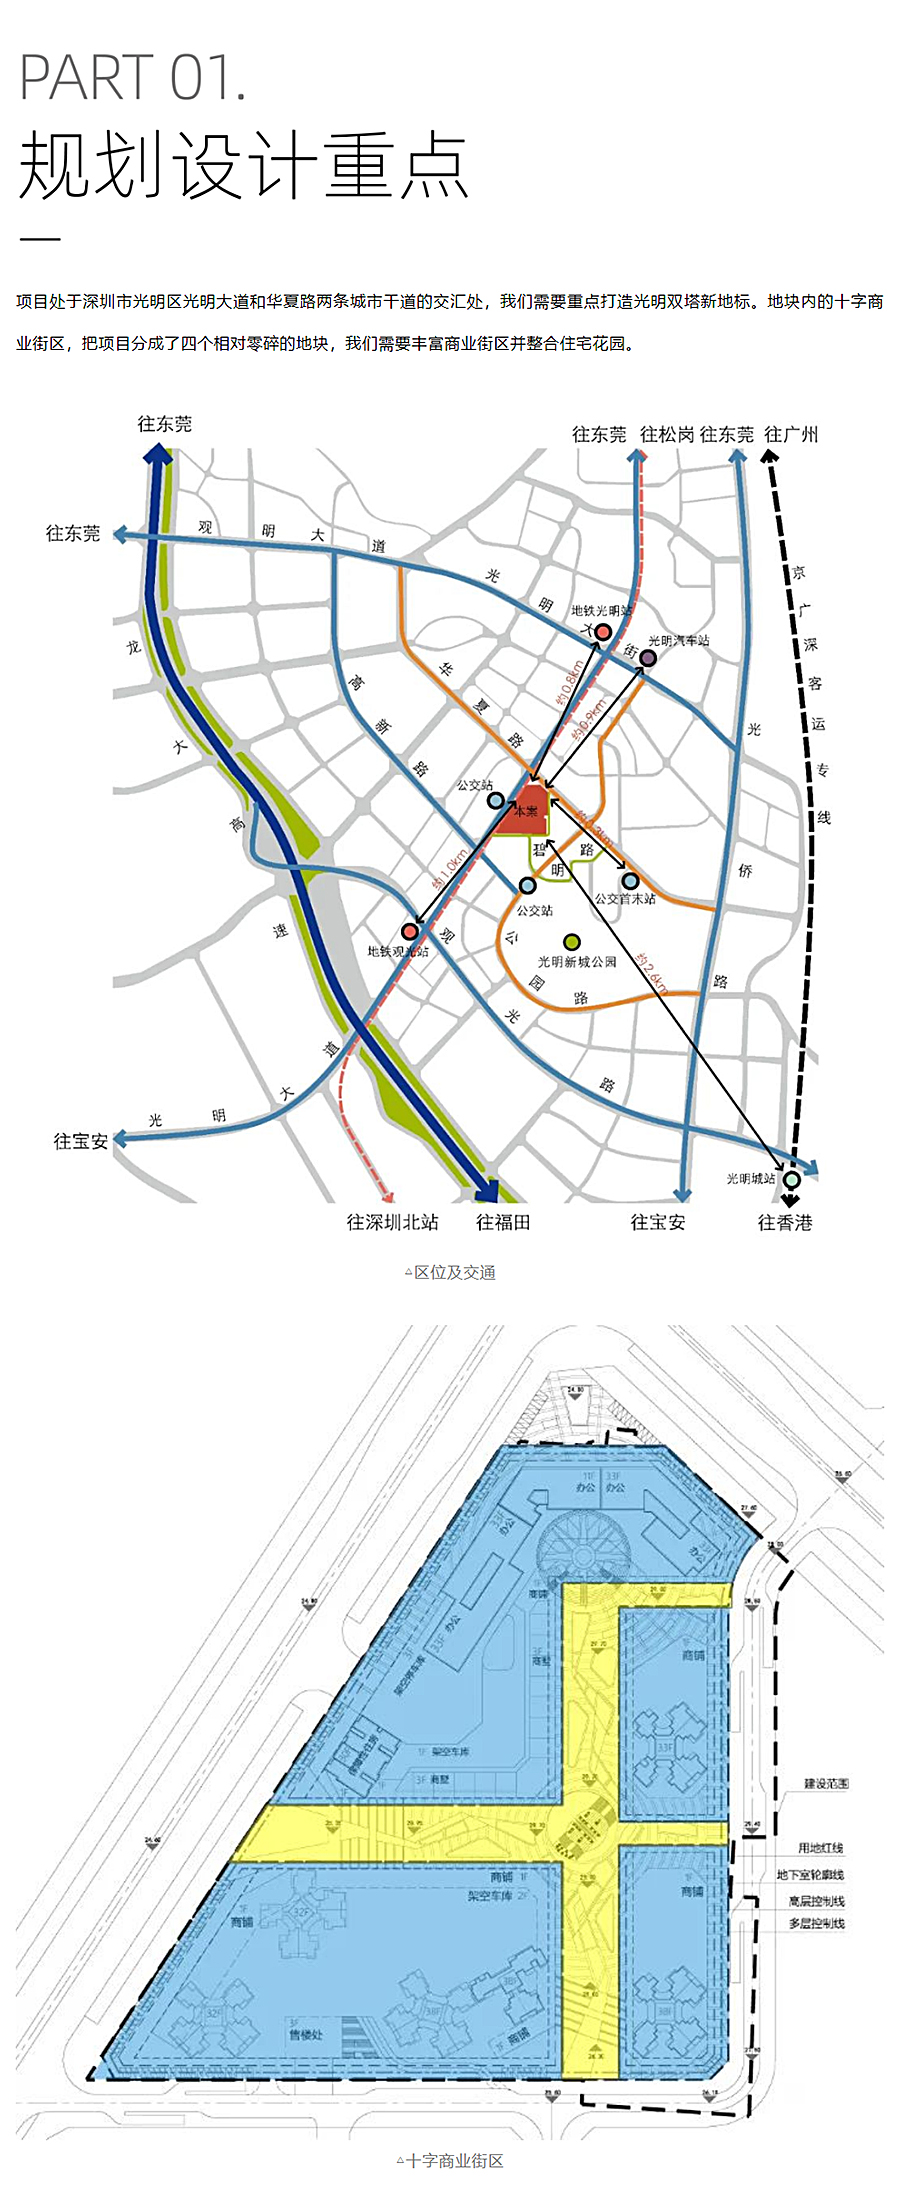 高密度下的生长型社区-_-宏发·万悦山_0005_图层-6.jpg